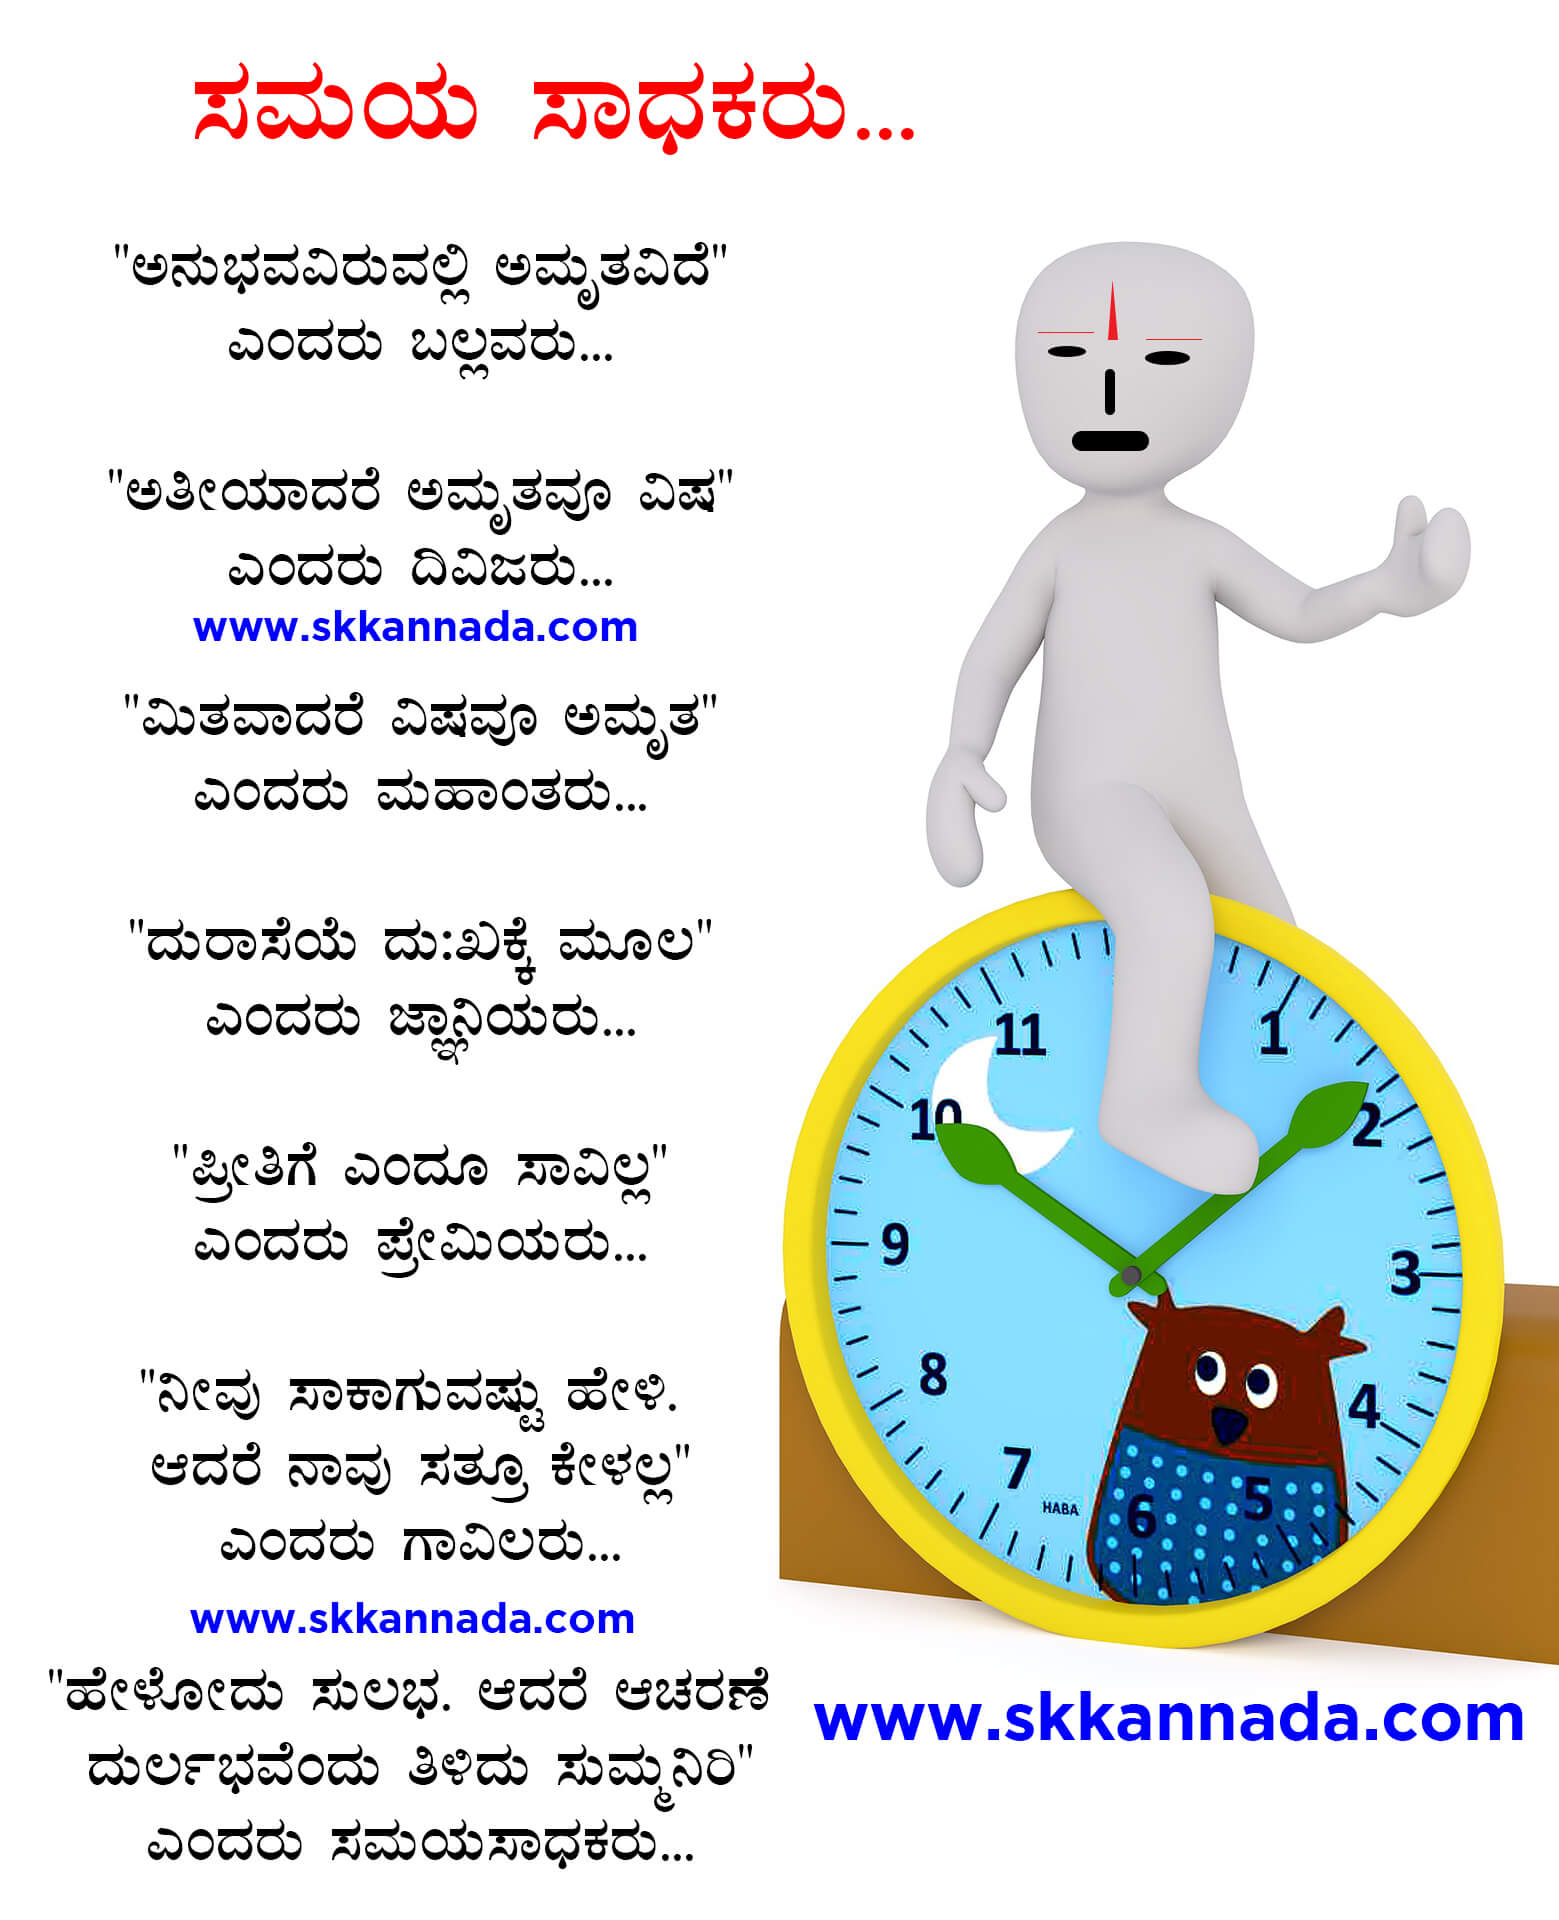 Kannada Kavanagalu about life